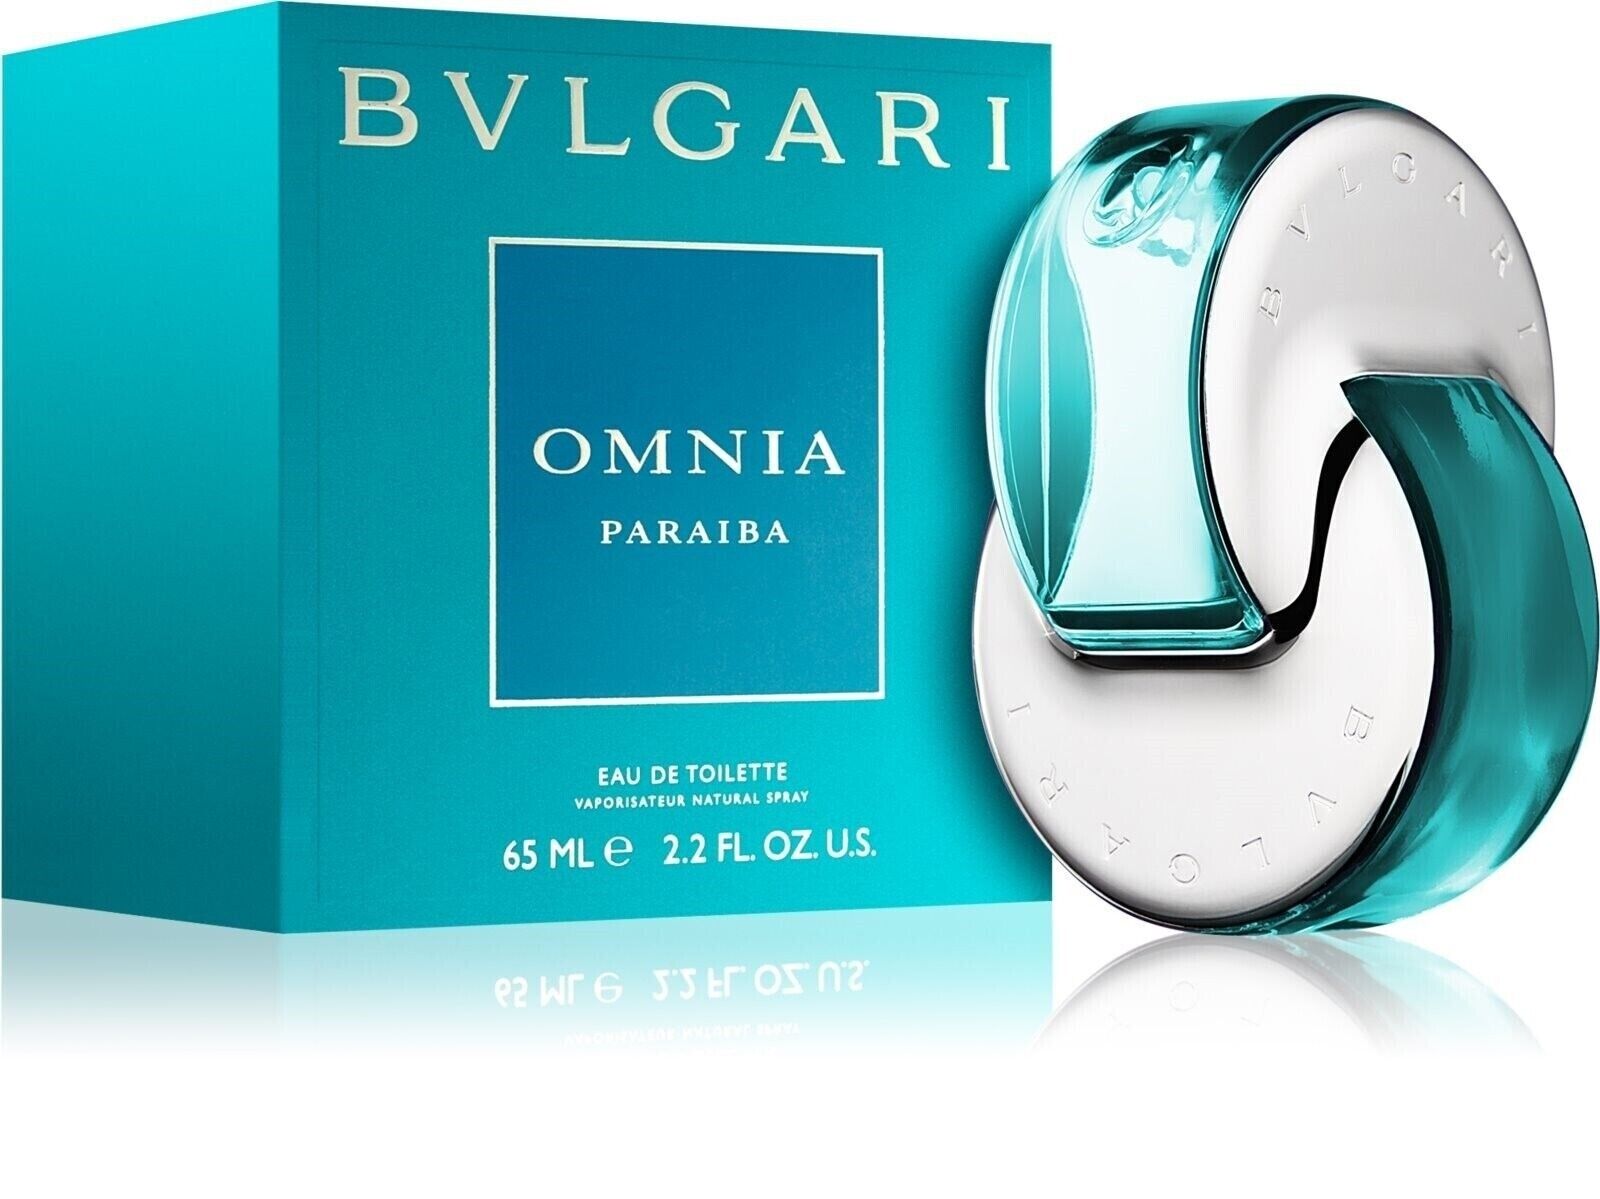 BVLGARI Omnia Paraiba Eau de Toilette Spray 2.2oz/65ML For Women Fragrance